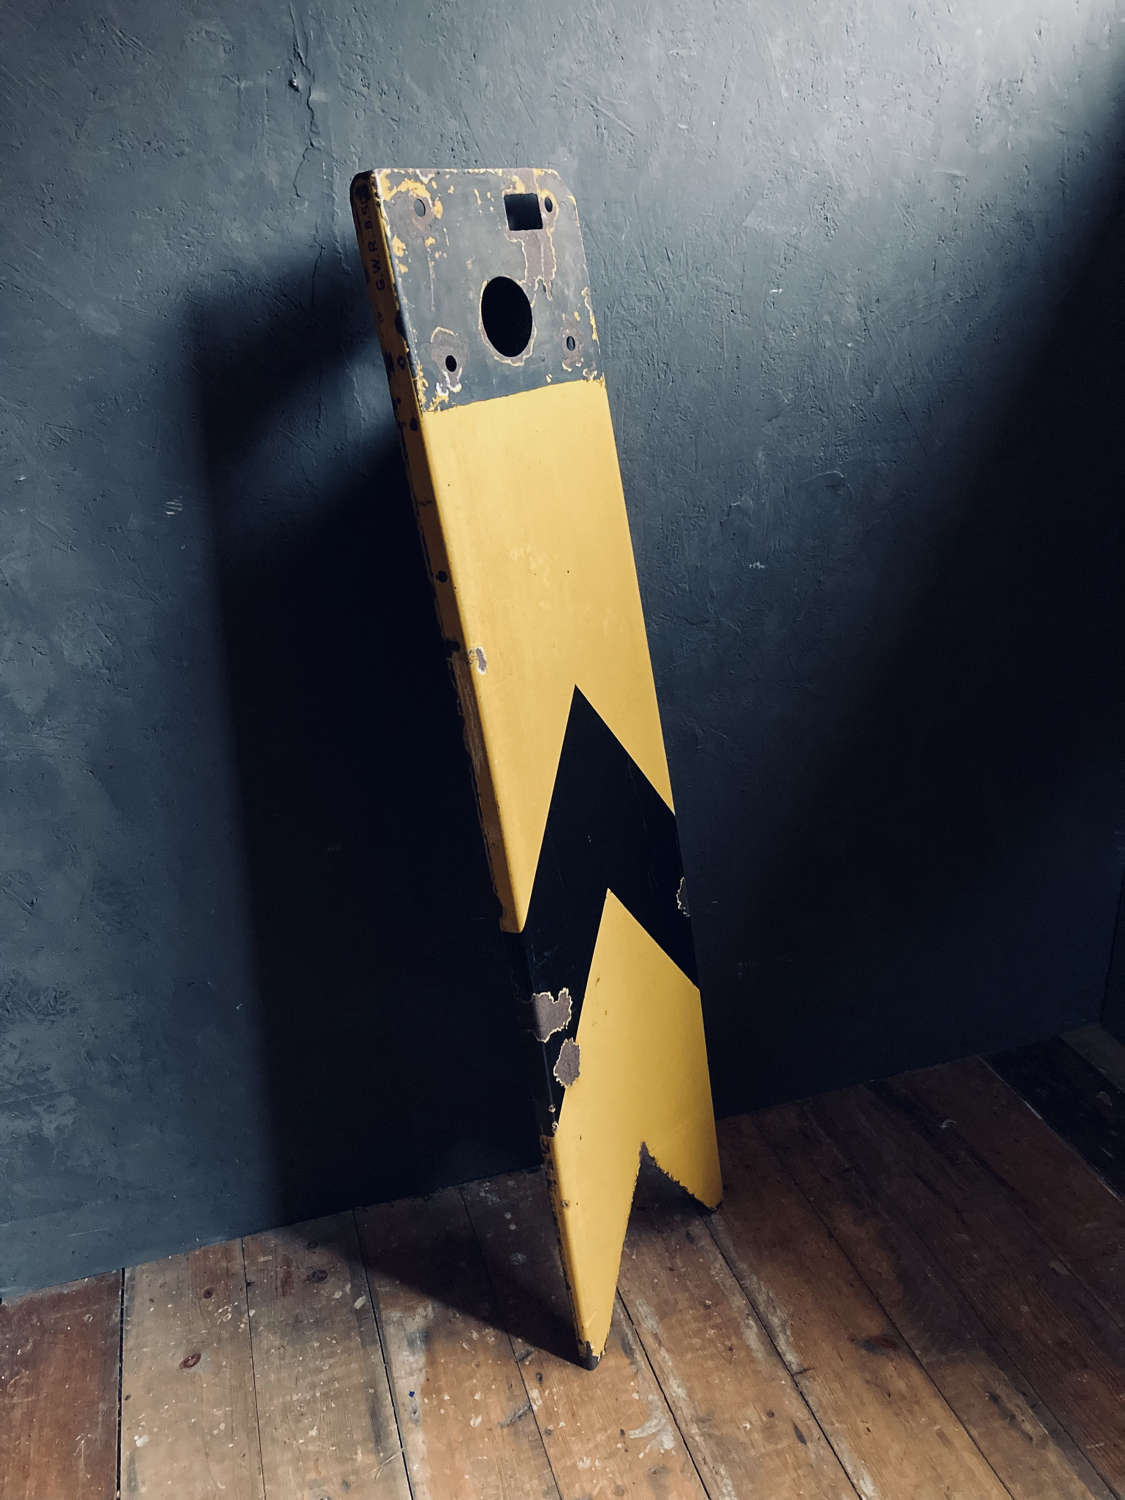 A rare GWR ‘distant’ signal blade.